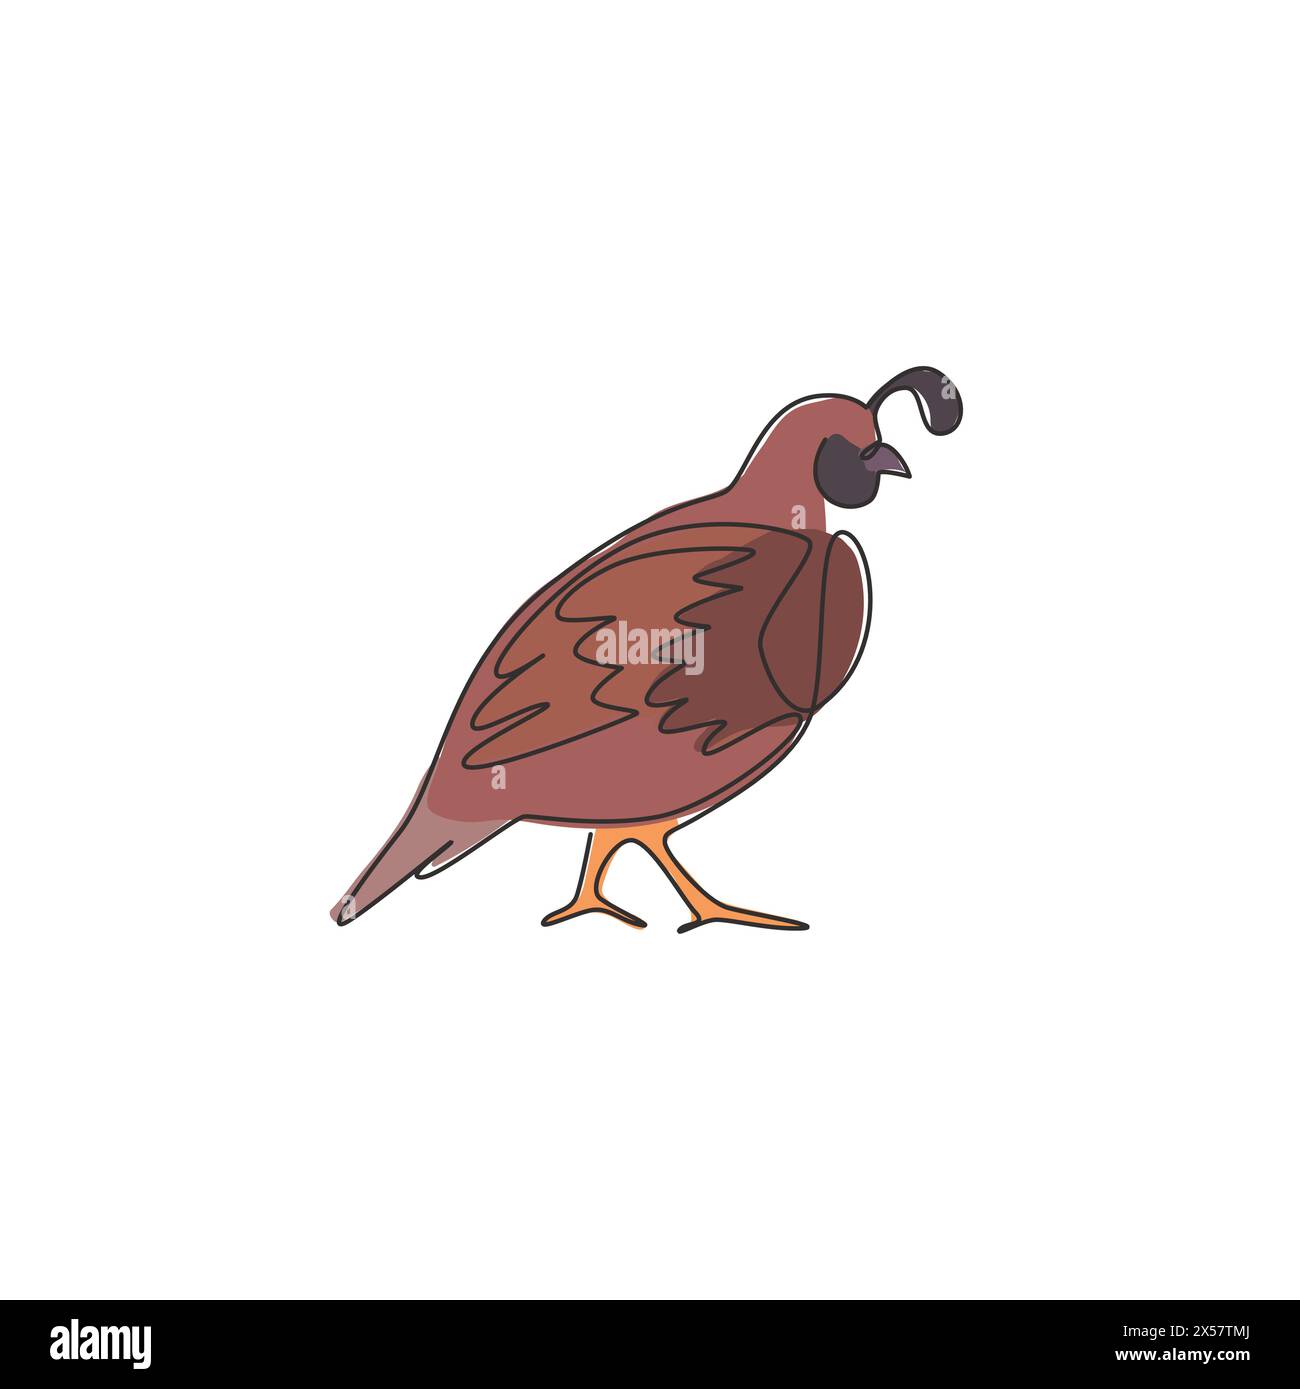 Un dessin simple ligne de caille de vallée drôle pour l'identité de logo. Concept de mascotte d'oiseau de caille de Californie pour l'icône du parc national de conservation. Moderne, suite Illustration de Vecteur